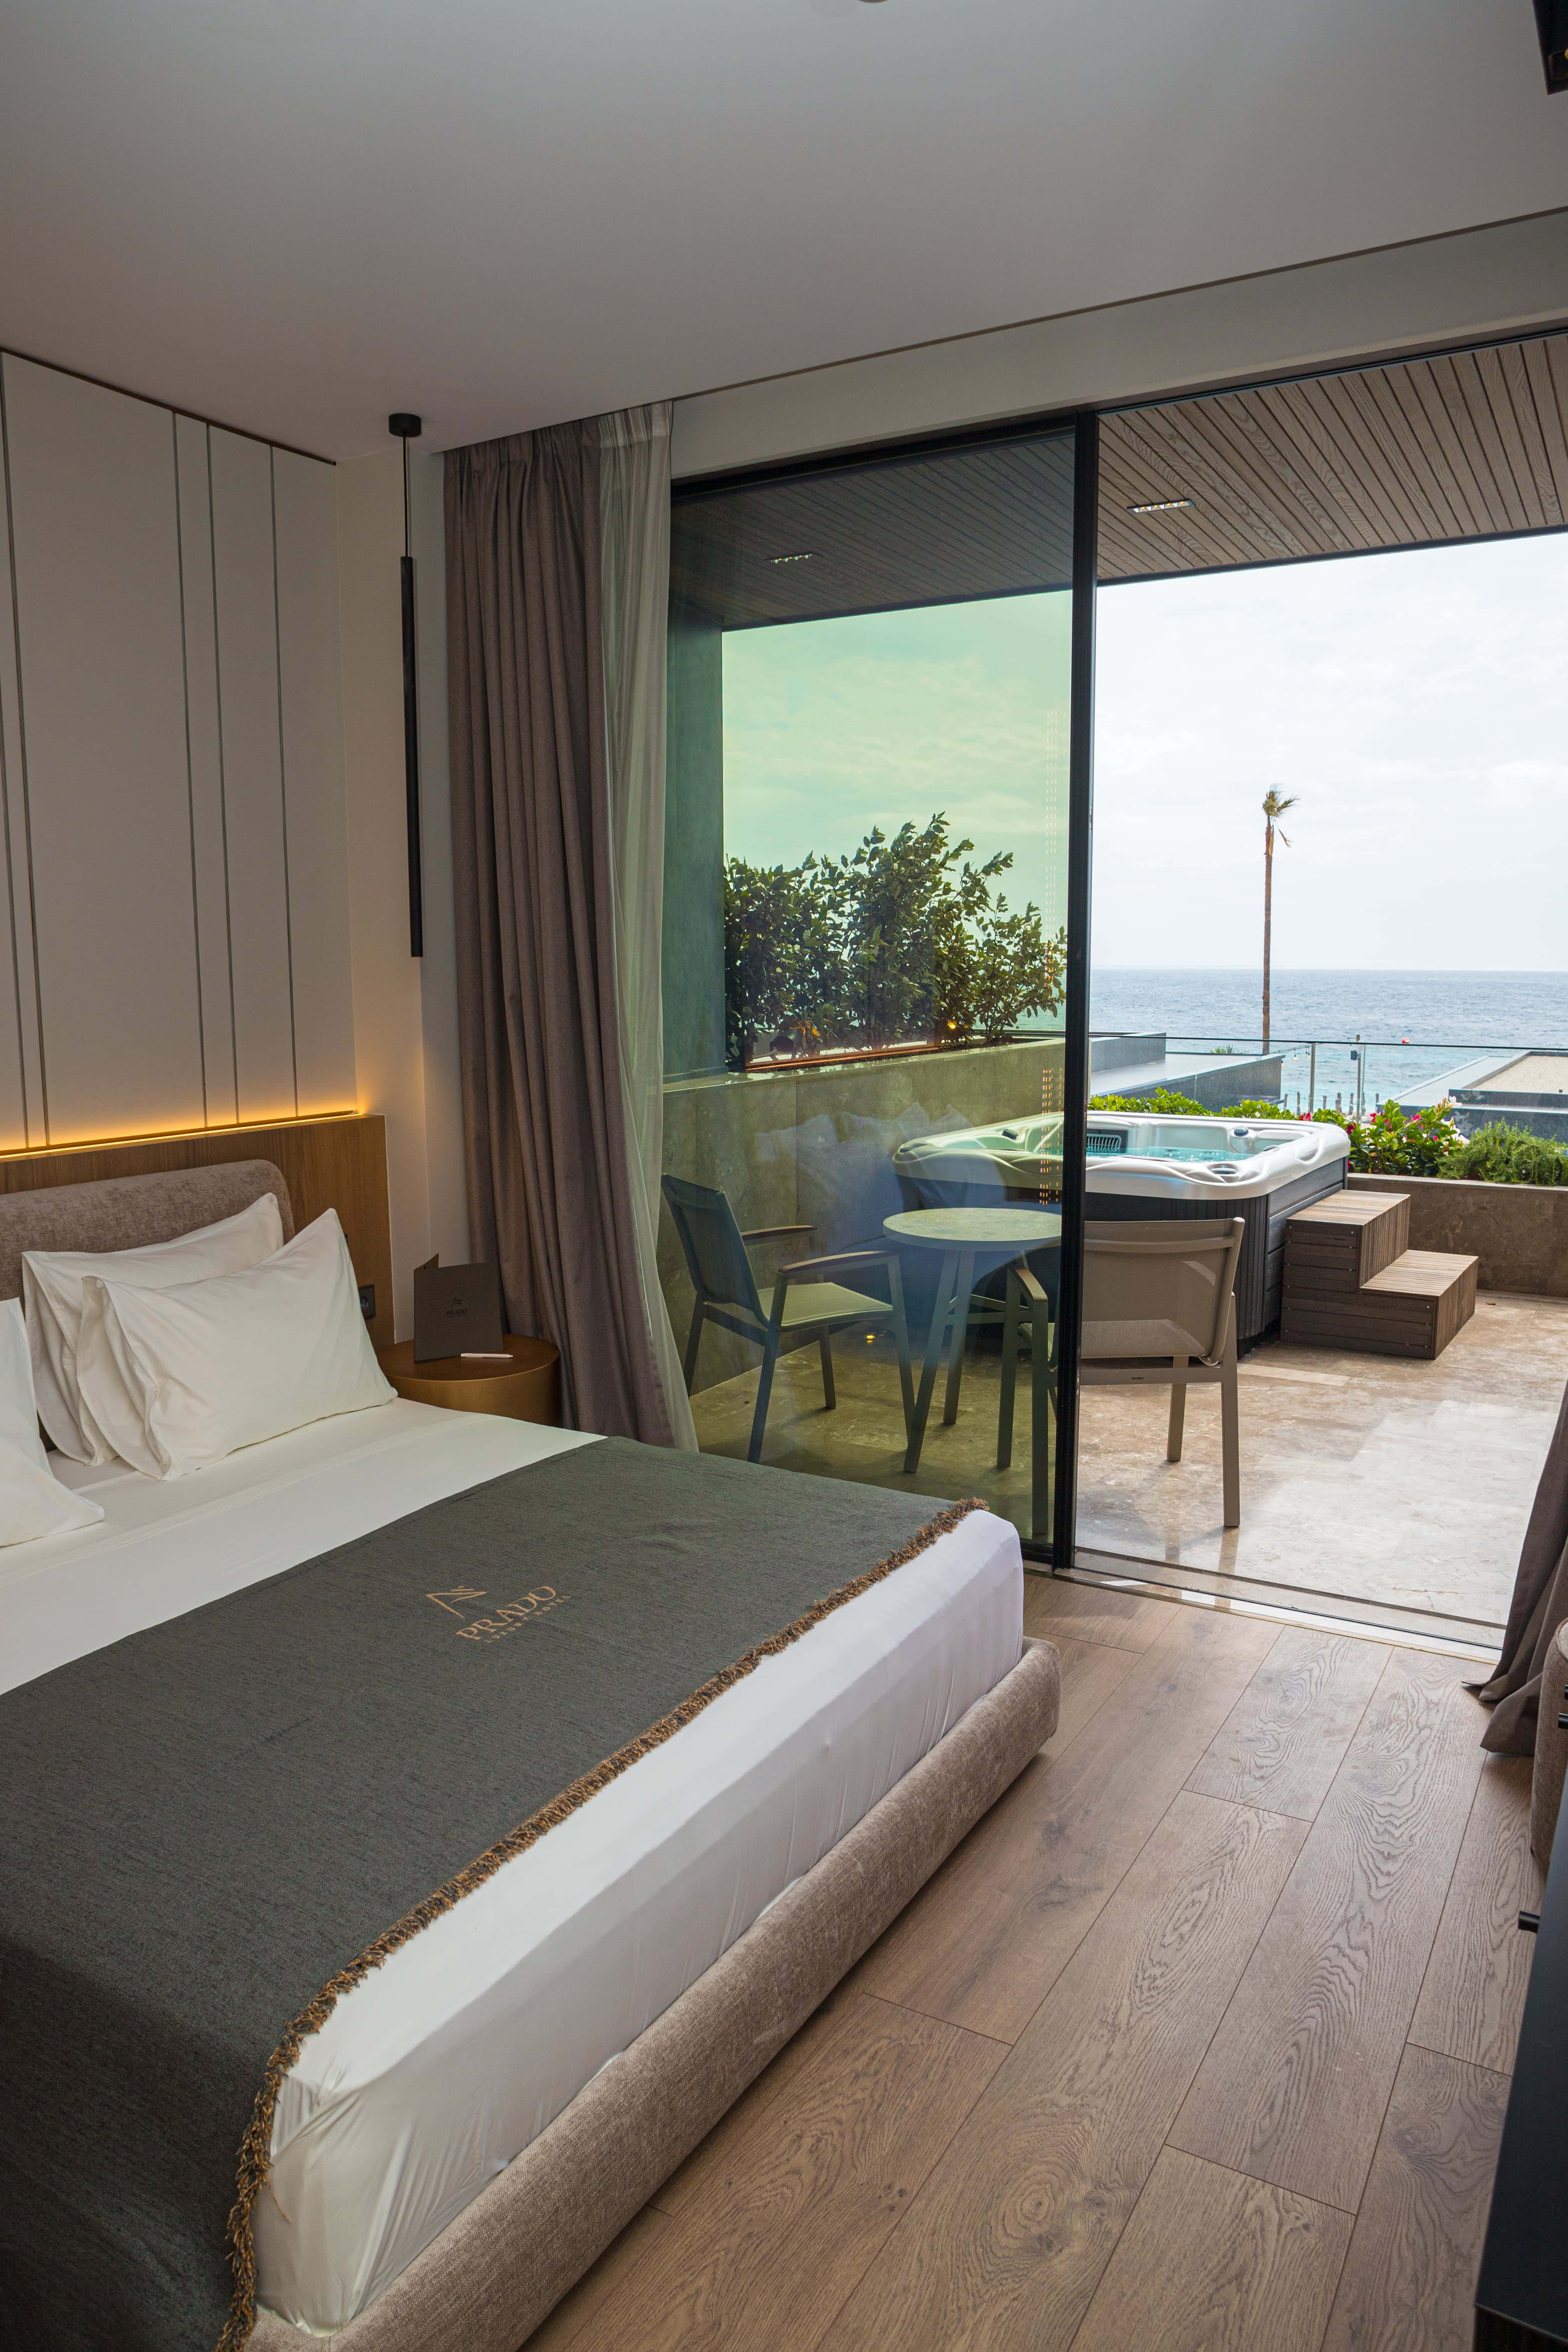 prado_luxury_hotel_room_standard_seaview_jacuzzi_side_view_balcony